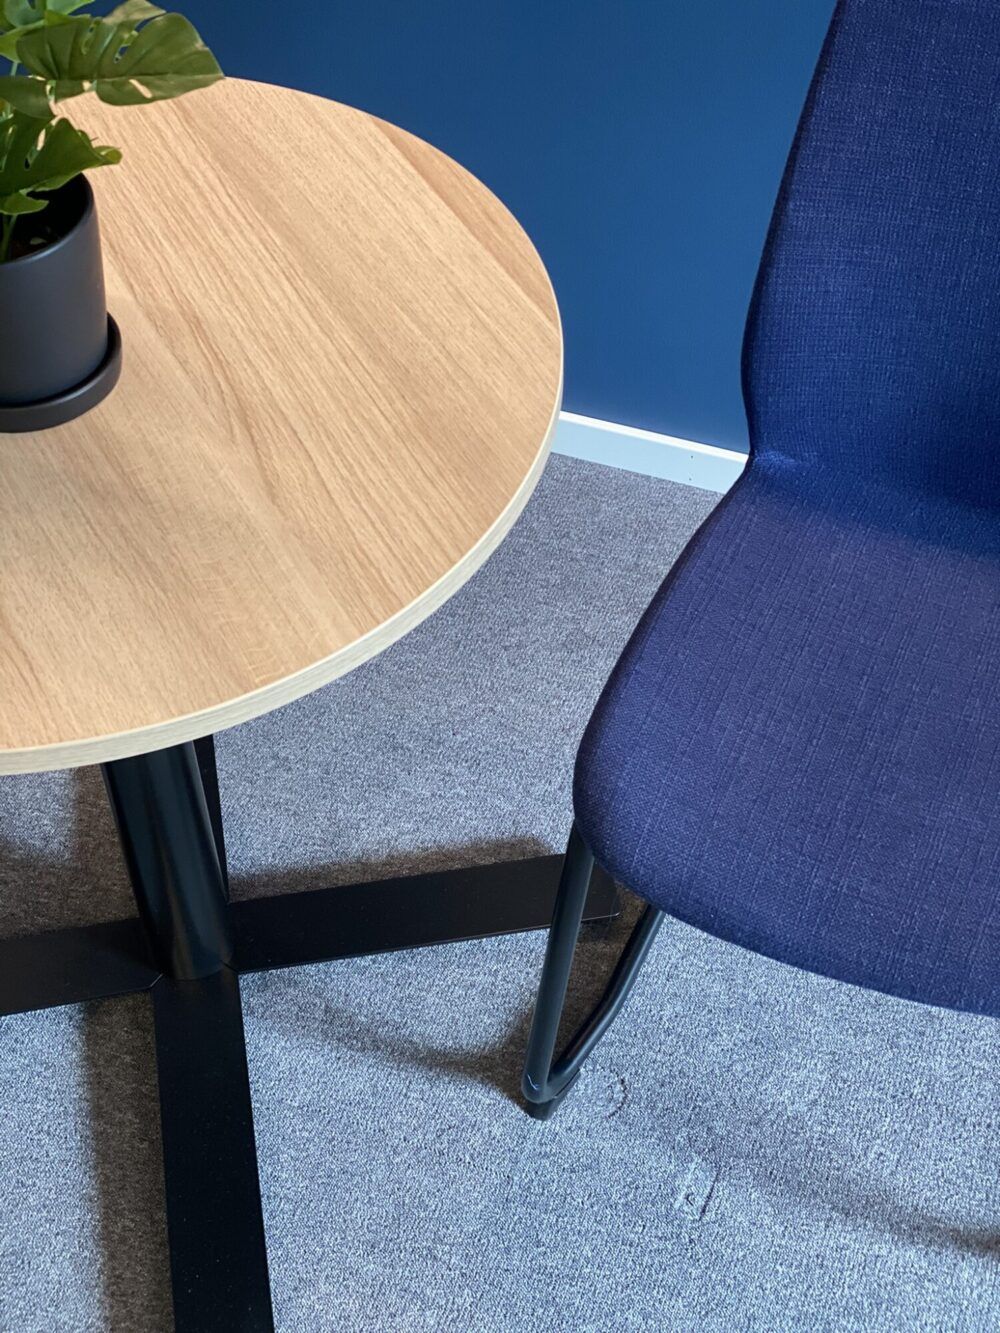 Sosial sone på kontor med rundt bord og to stoler.